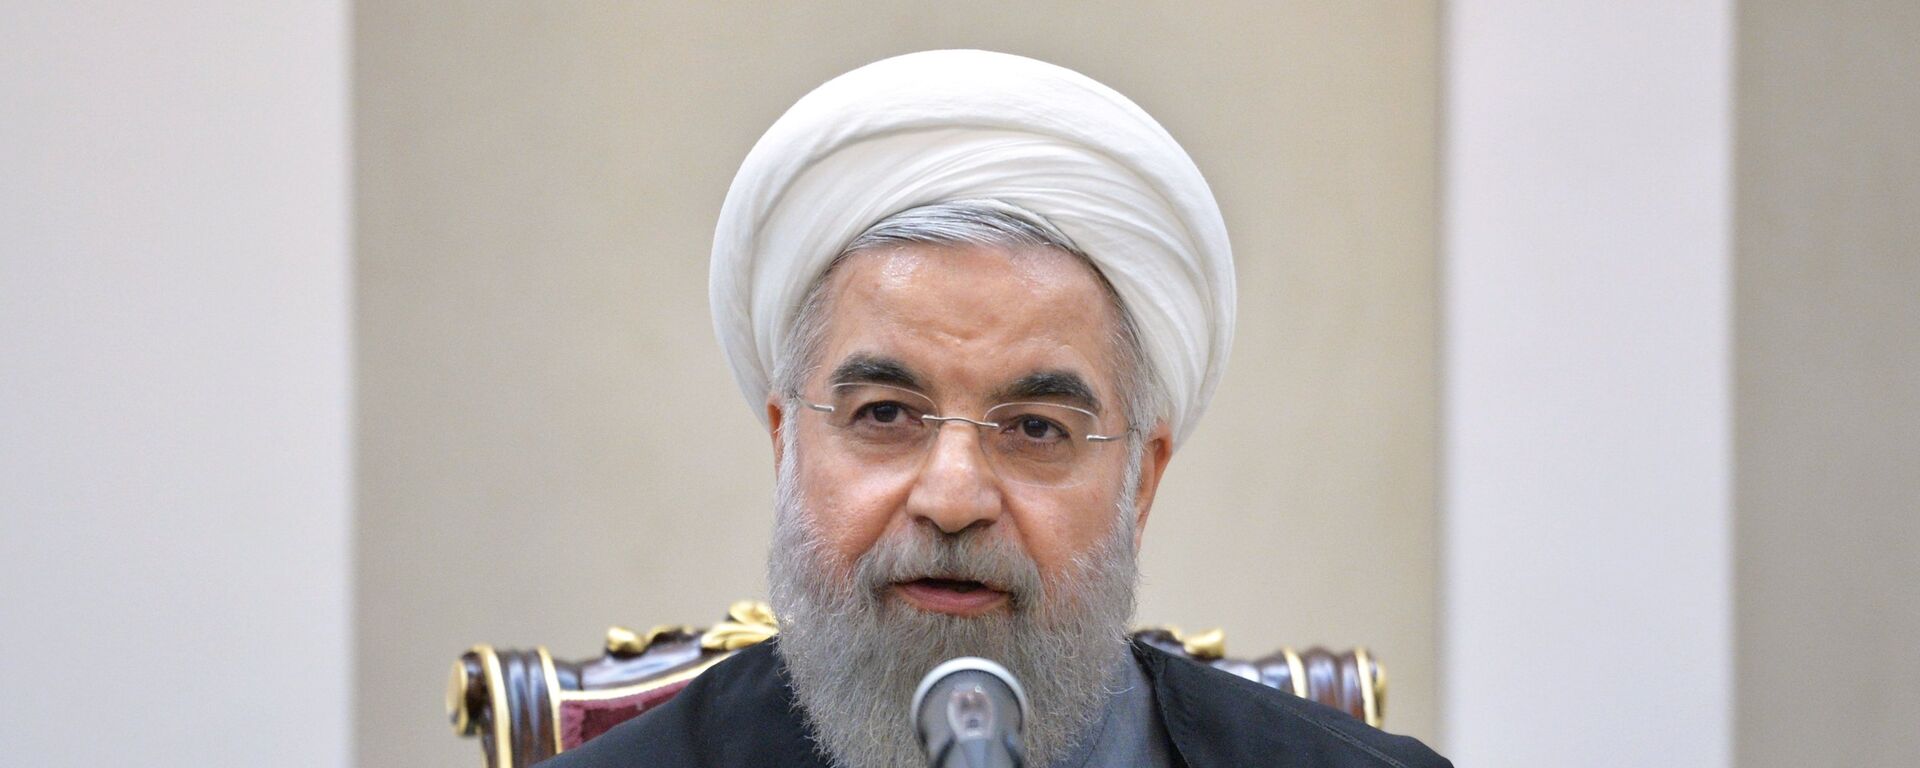 Президент Исламской Республики Иран Хасан Роухани, архивное фото - Sputnik Тоҷикистон, 1920, 20.05.2017